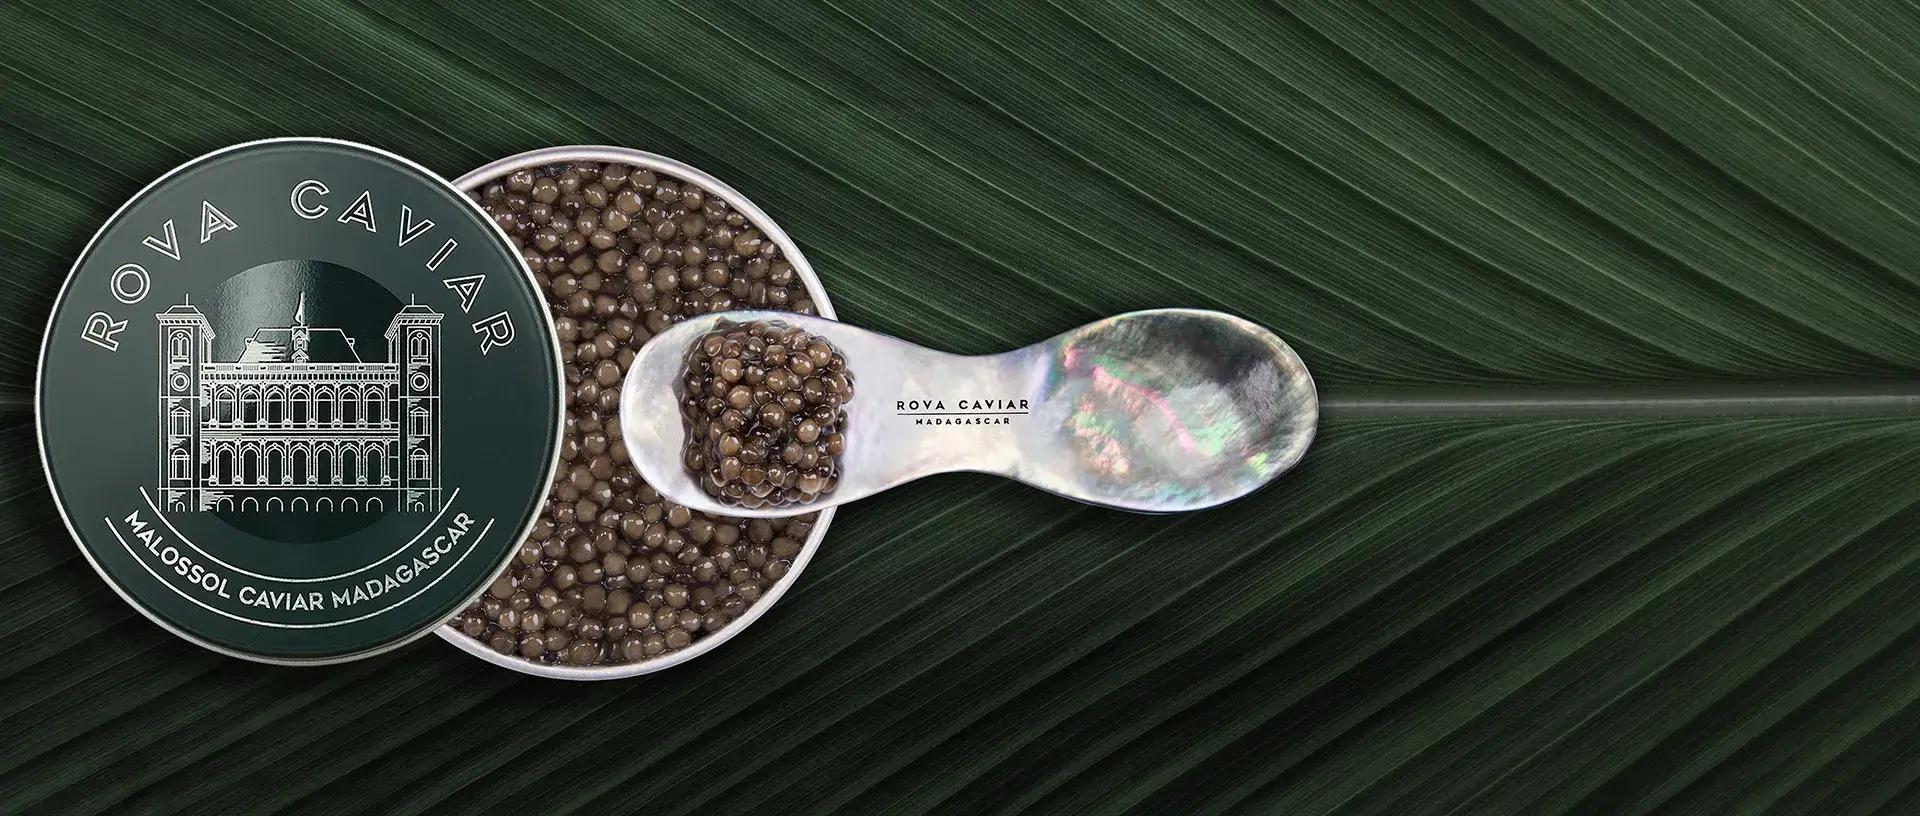 Imperial Ossetra - Rova Caviar Madagascar